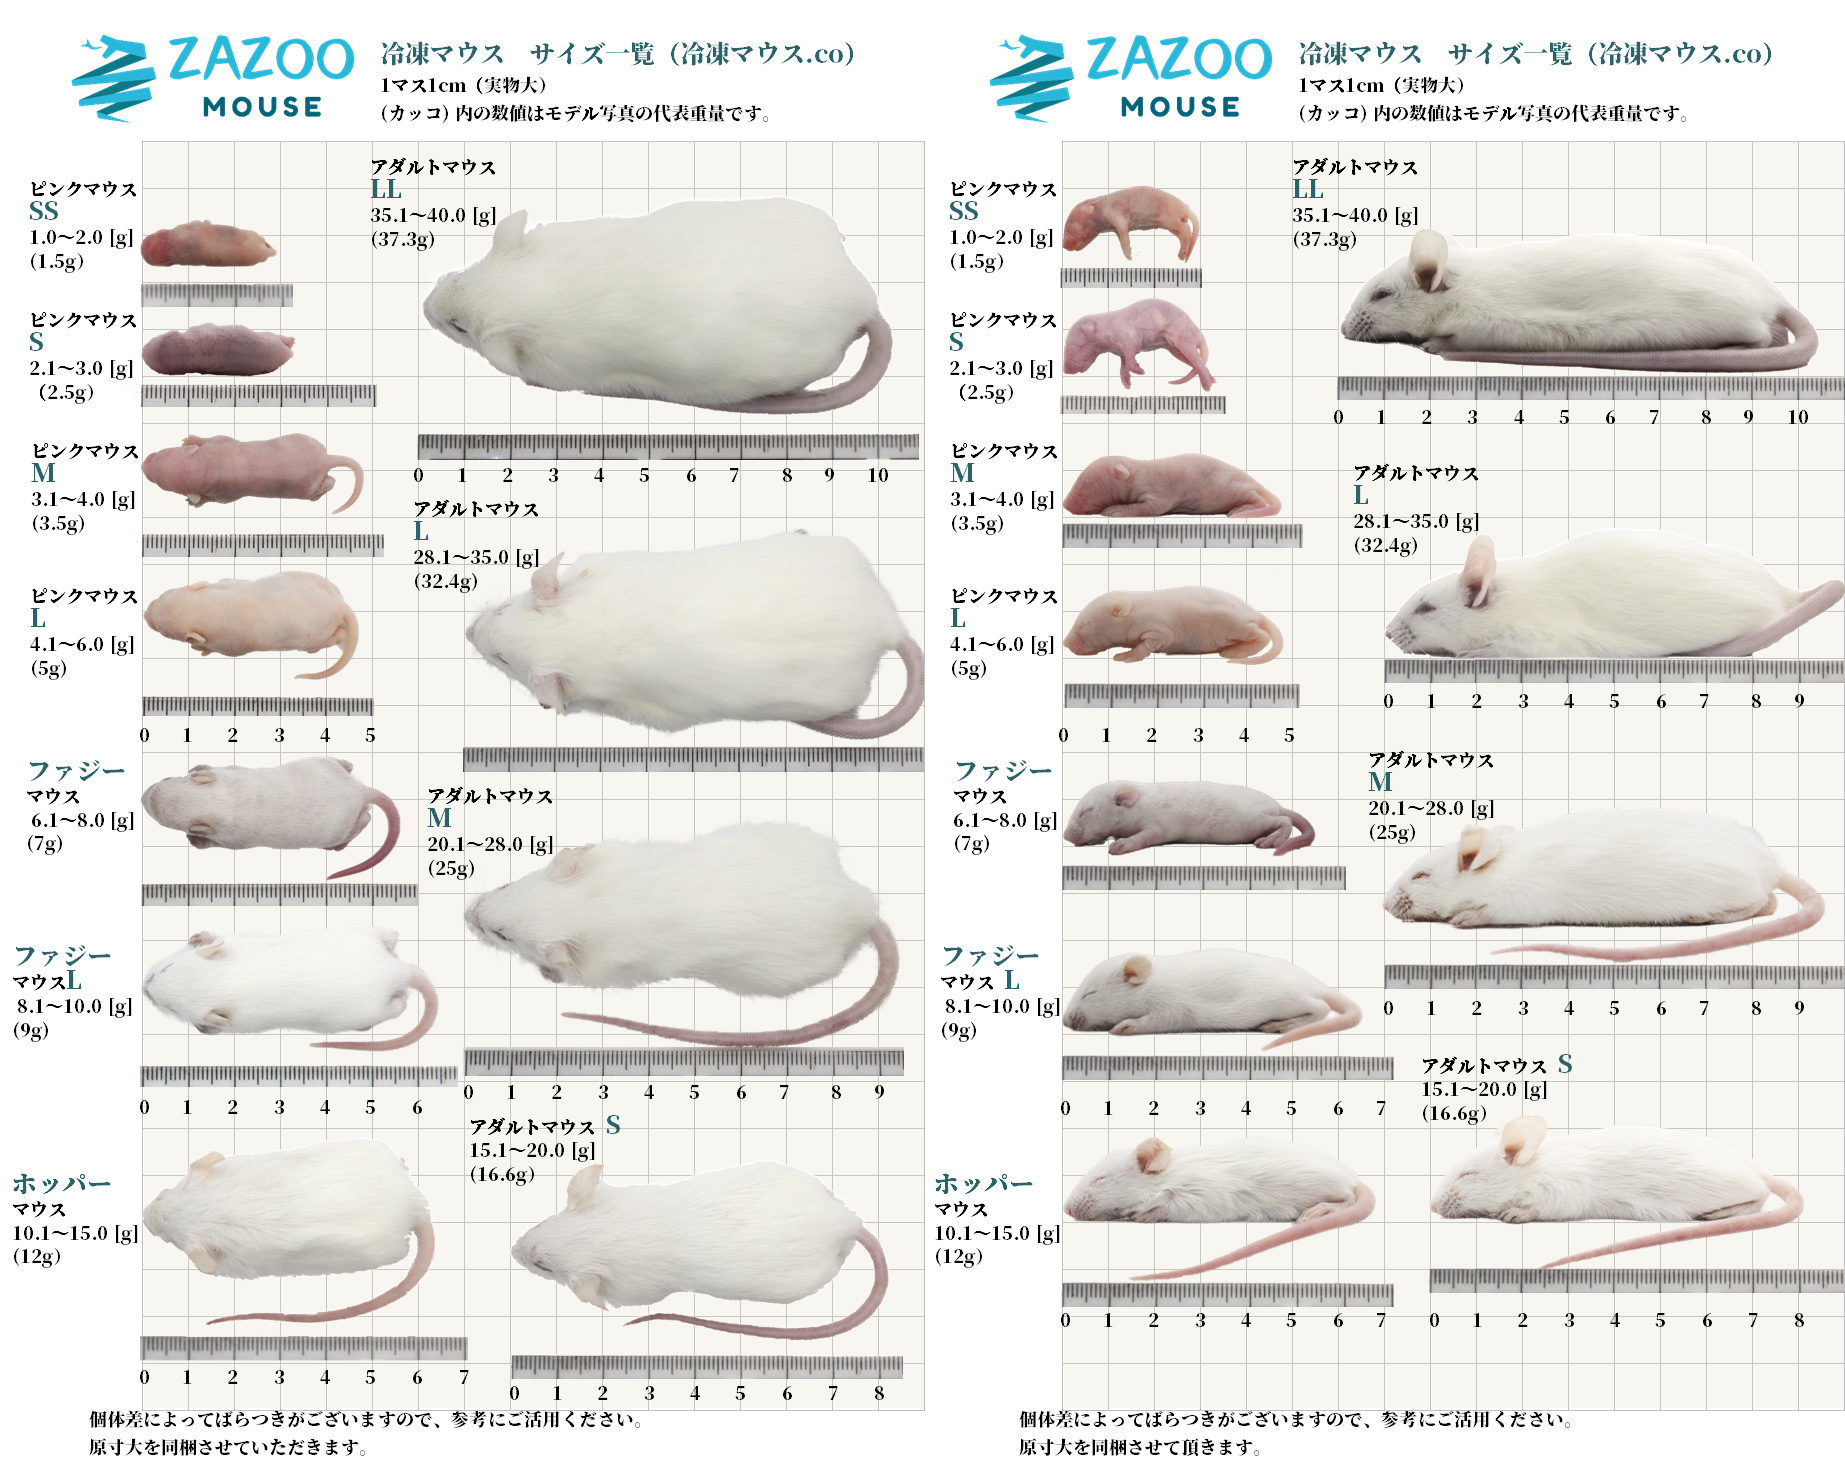 ZAZOO 冷凍マウスドットコム あなたのペットがいつまでも健康でありますように